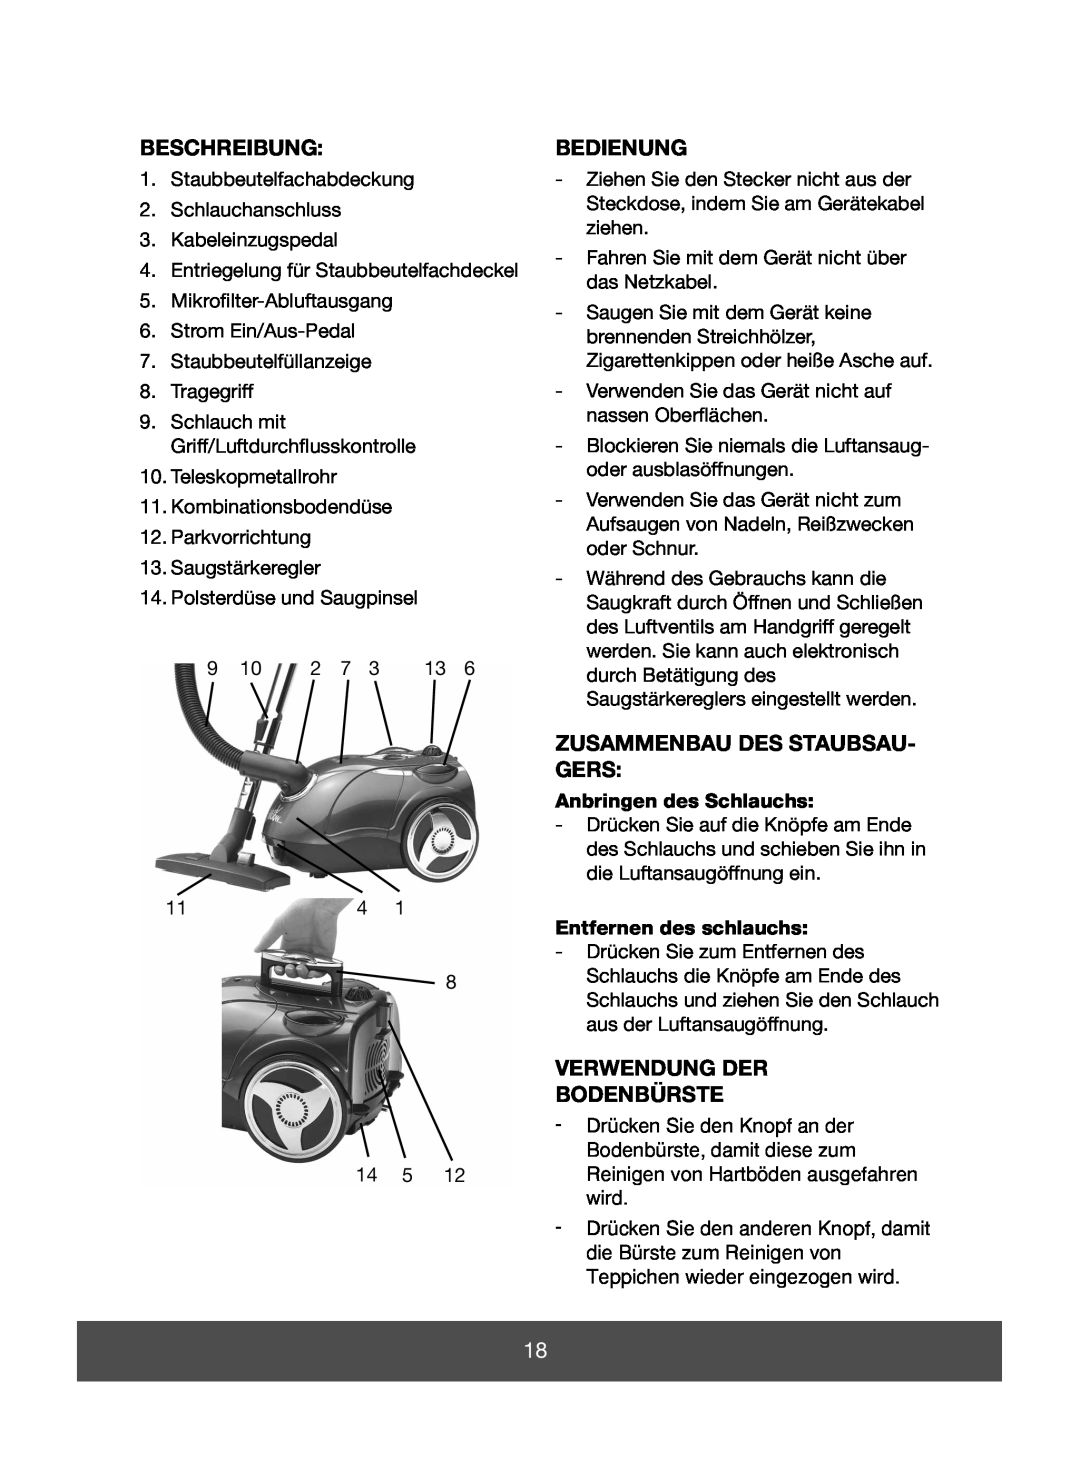 Melissa 640-064 manual Beschreibung, Bedienung, Zusammenbau Des Staubsau- Gers, Verwendung Der Bodenbürste 